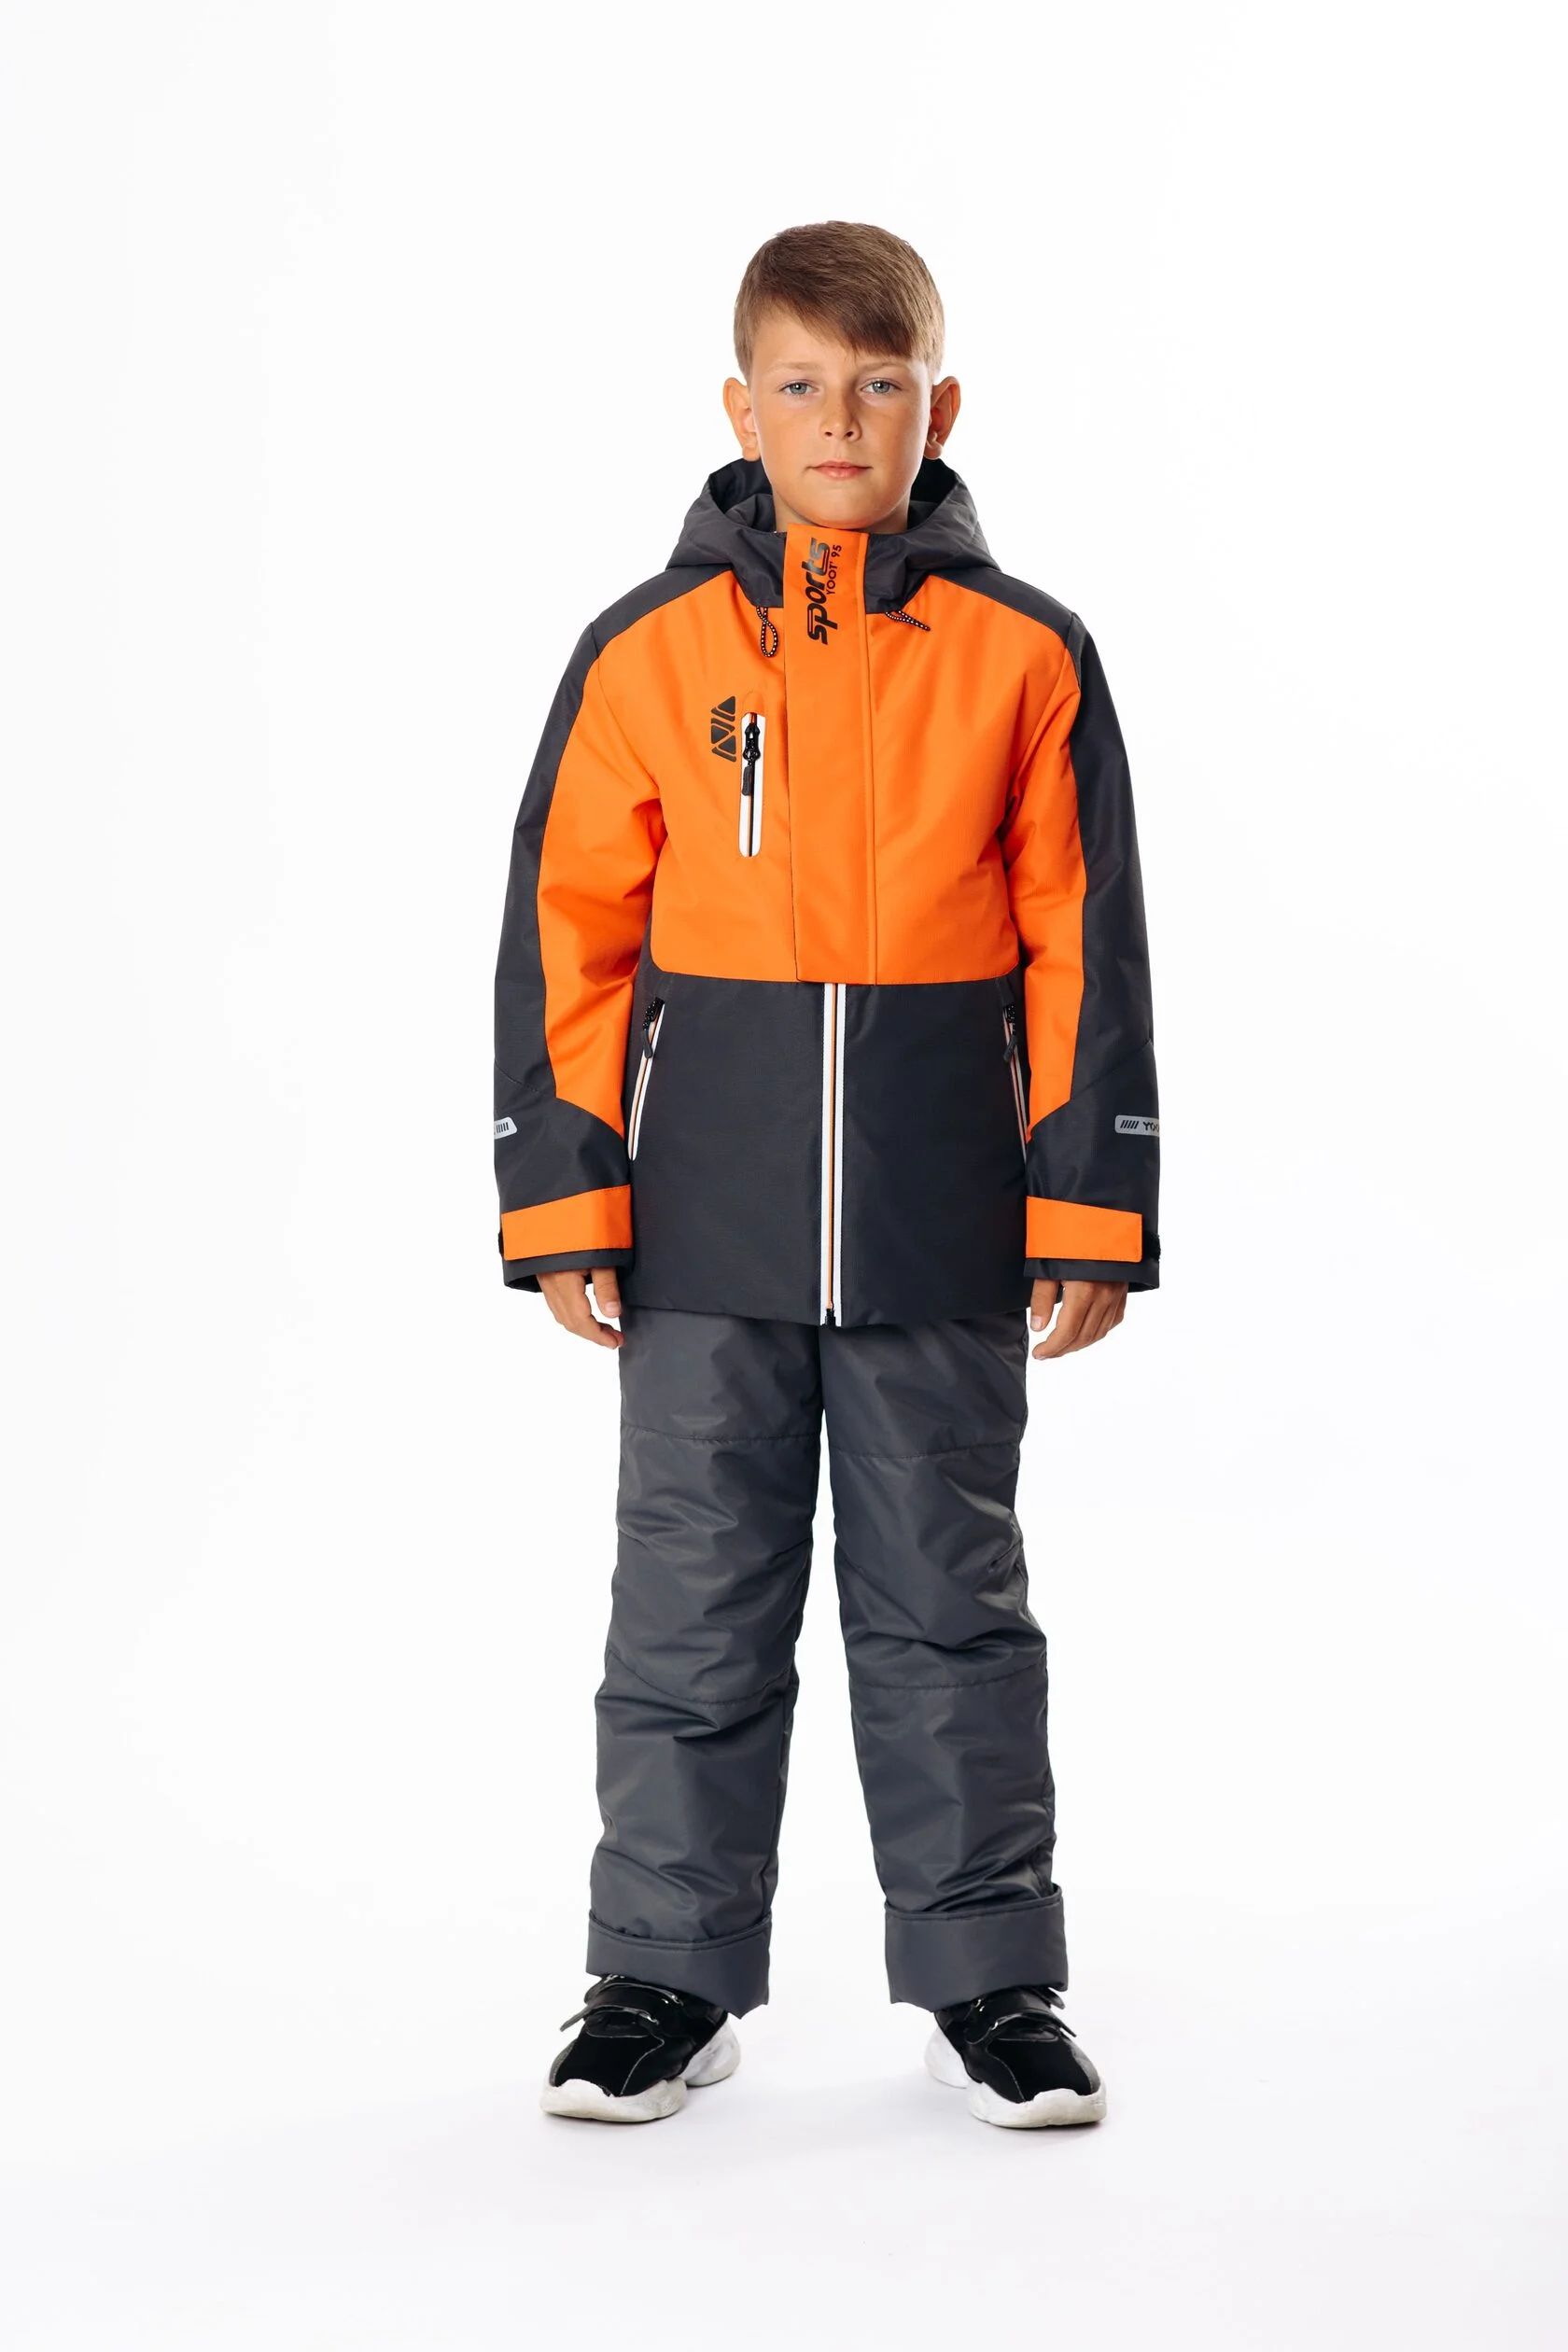 Комплект верхней одежды Yoot 2505 оранжевый, 116 комплект верхней одежды kvartet 661 м оранжевый 122